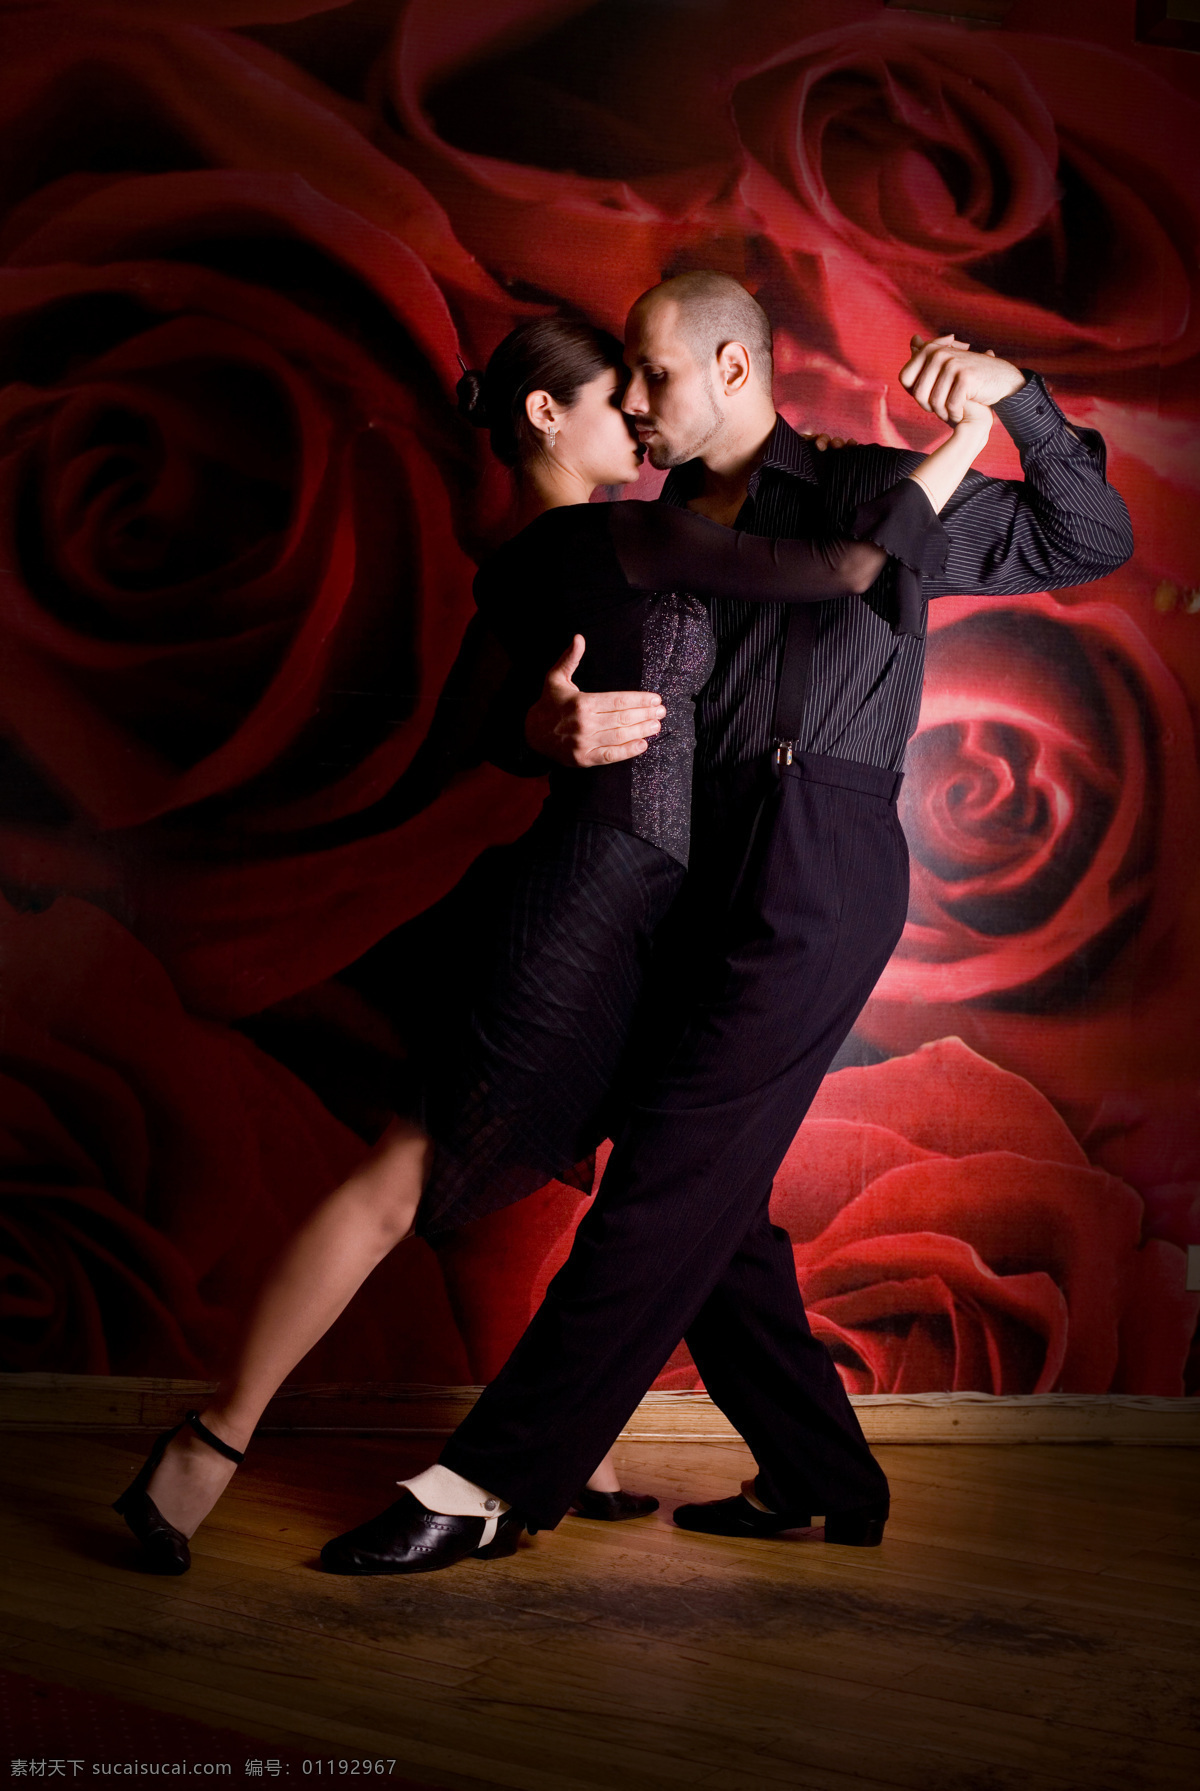 舞者图片素材 舞者 舞蹈 舞姿 女性 男性 艺术 高雅 优雅 西方 黑衣 黑白 造型 男女 双人 木地板 玫瑰花墙纸 生活人物 人物图片